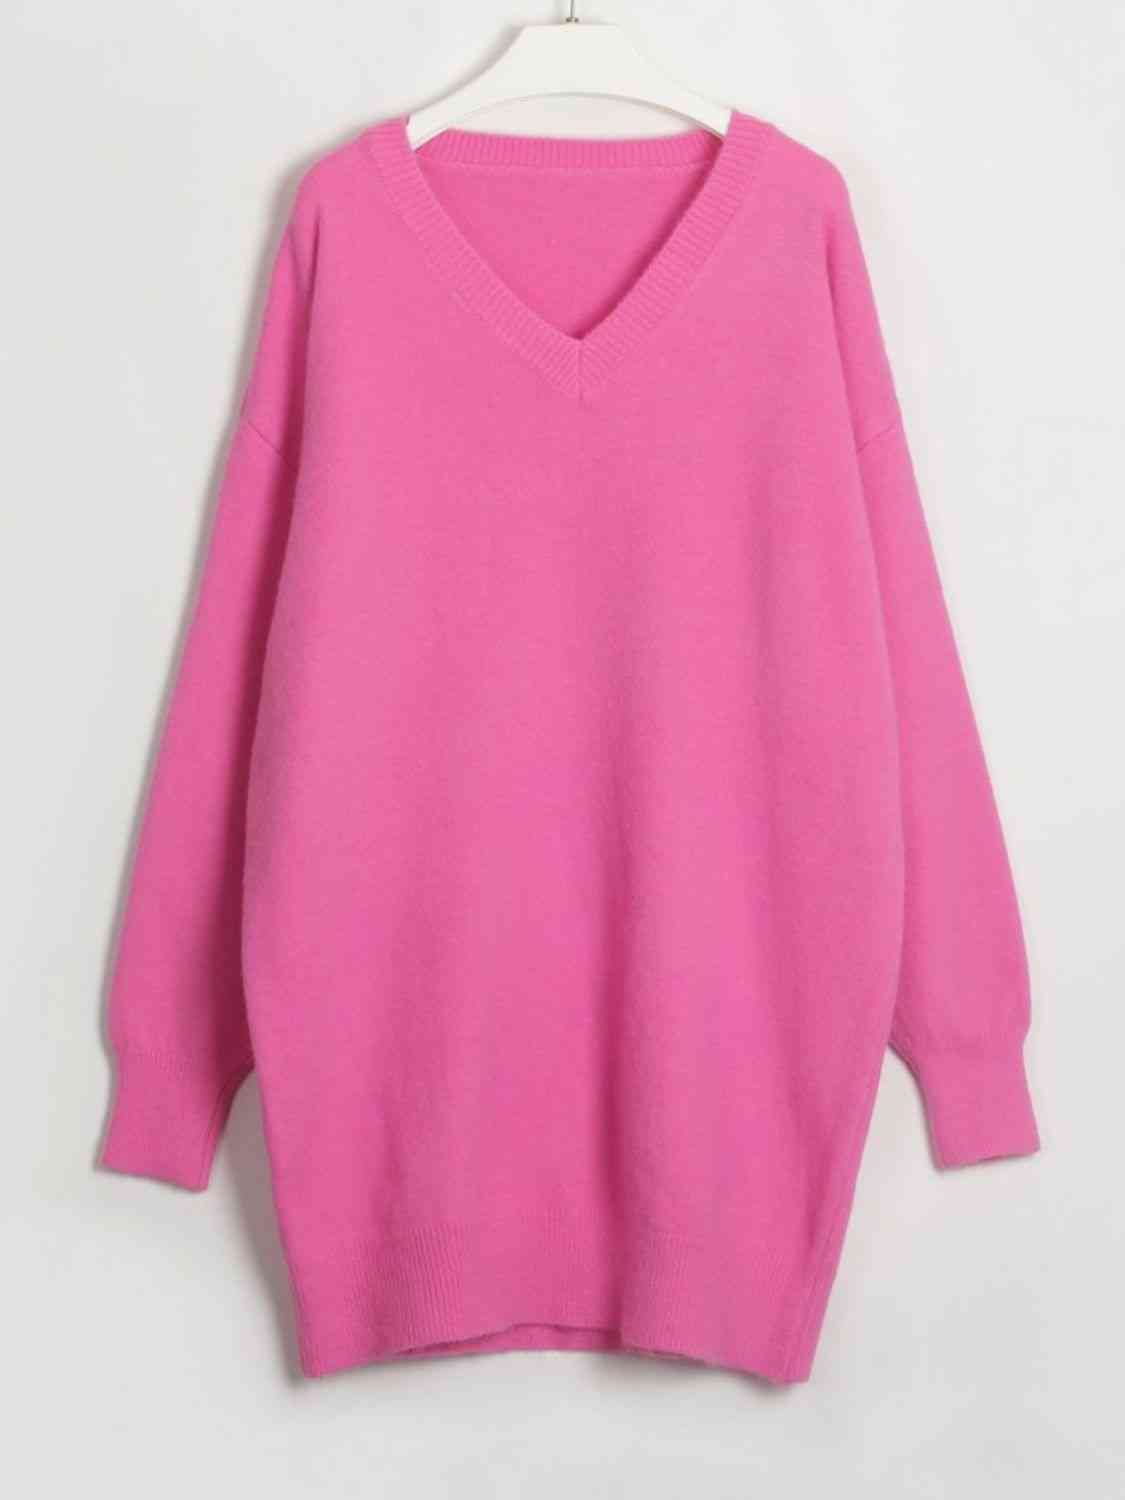 V-Neck One Size Sweater Dress